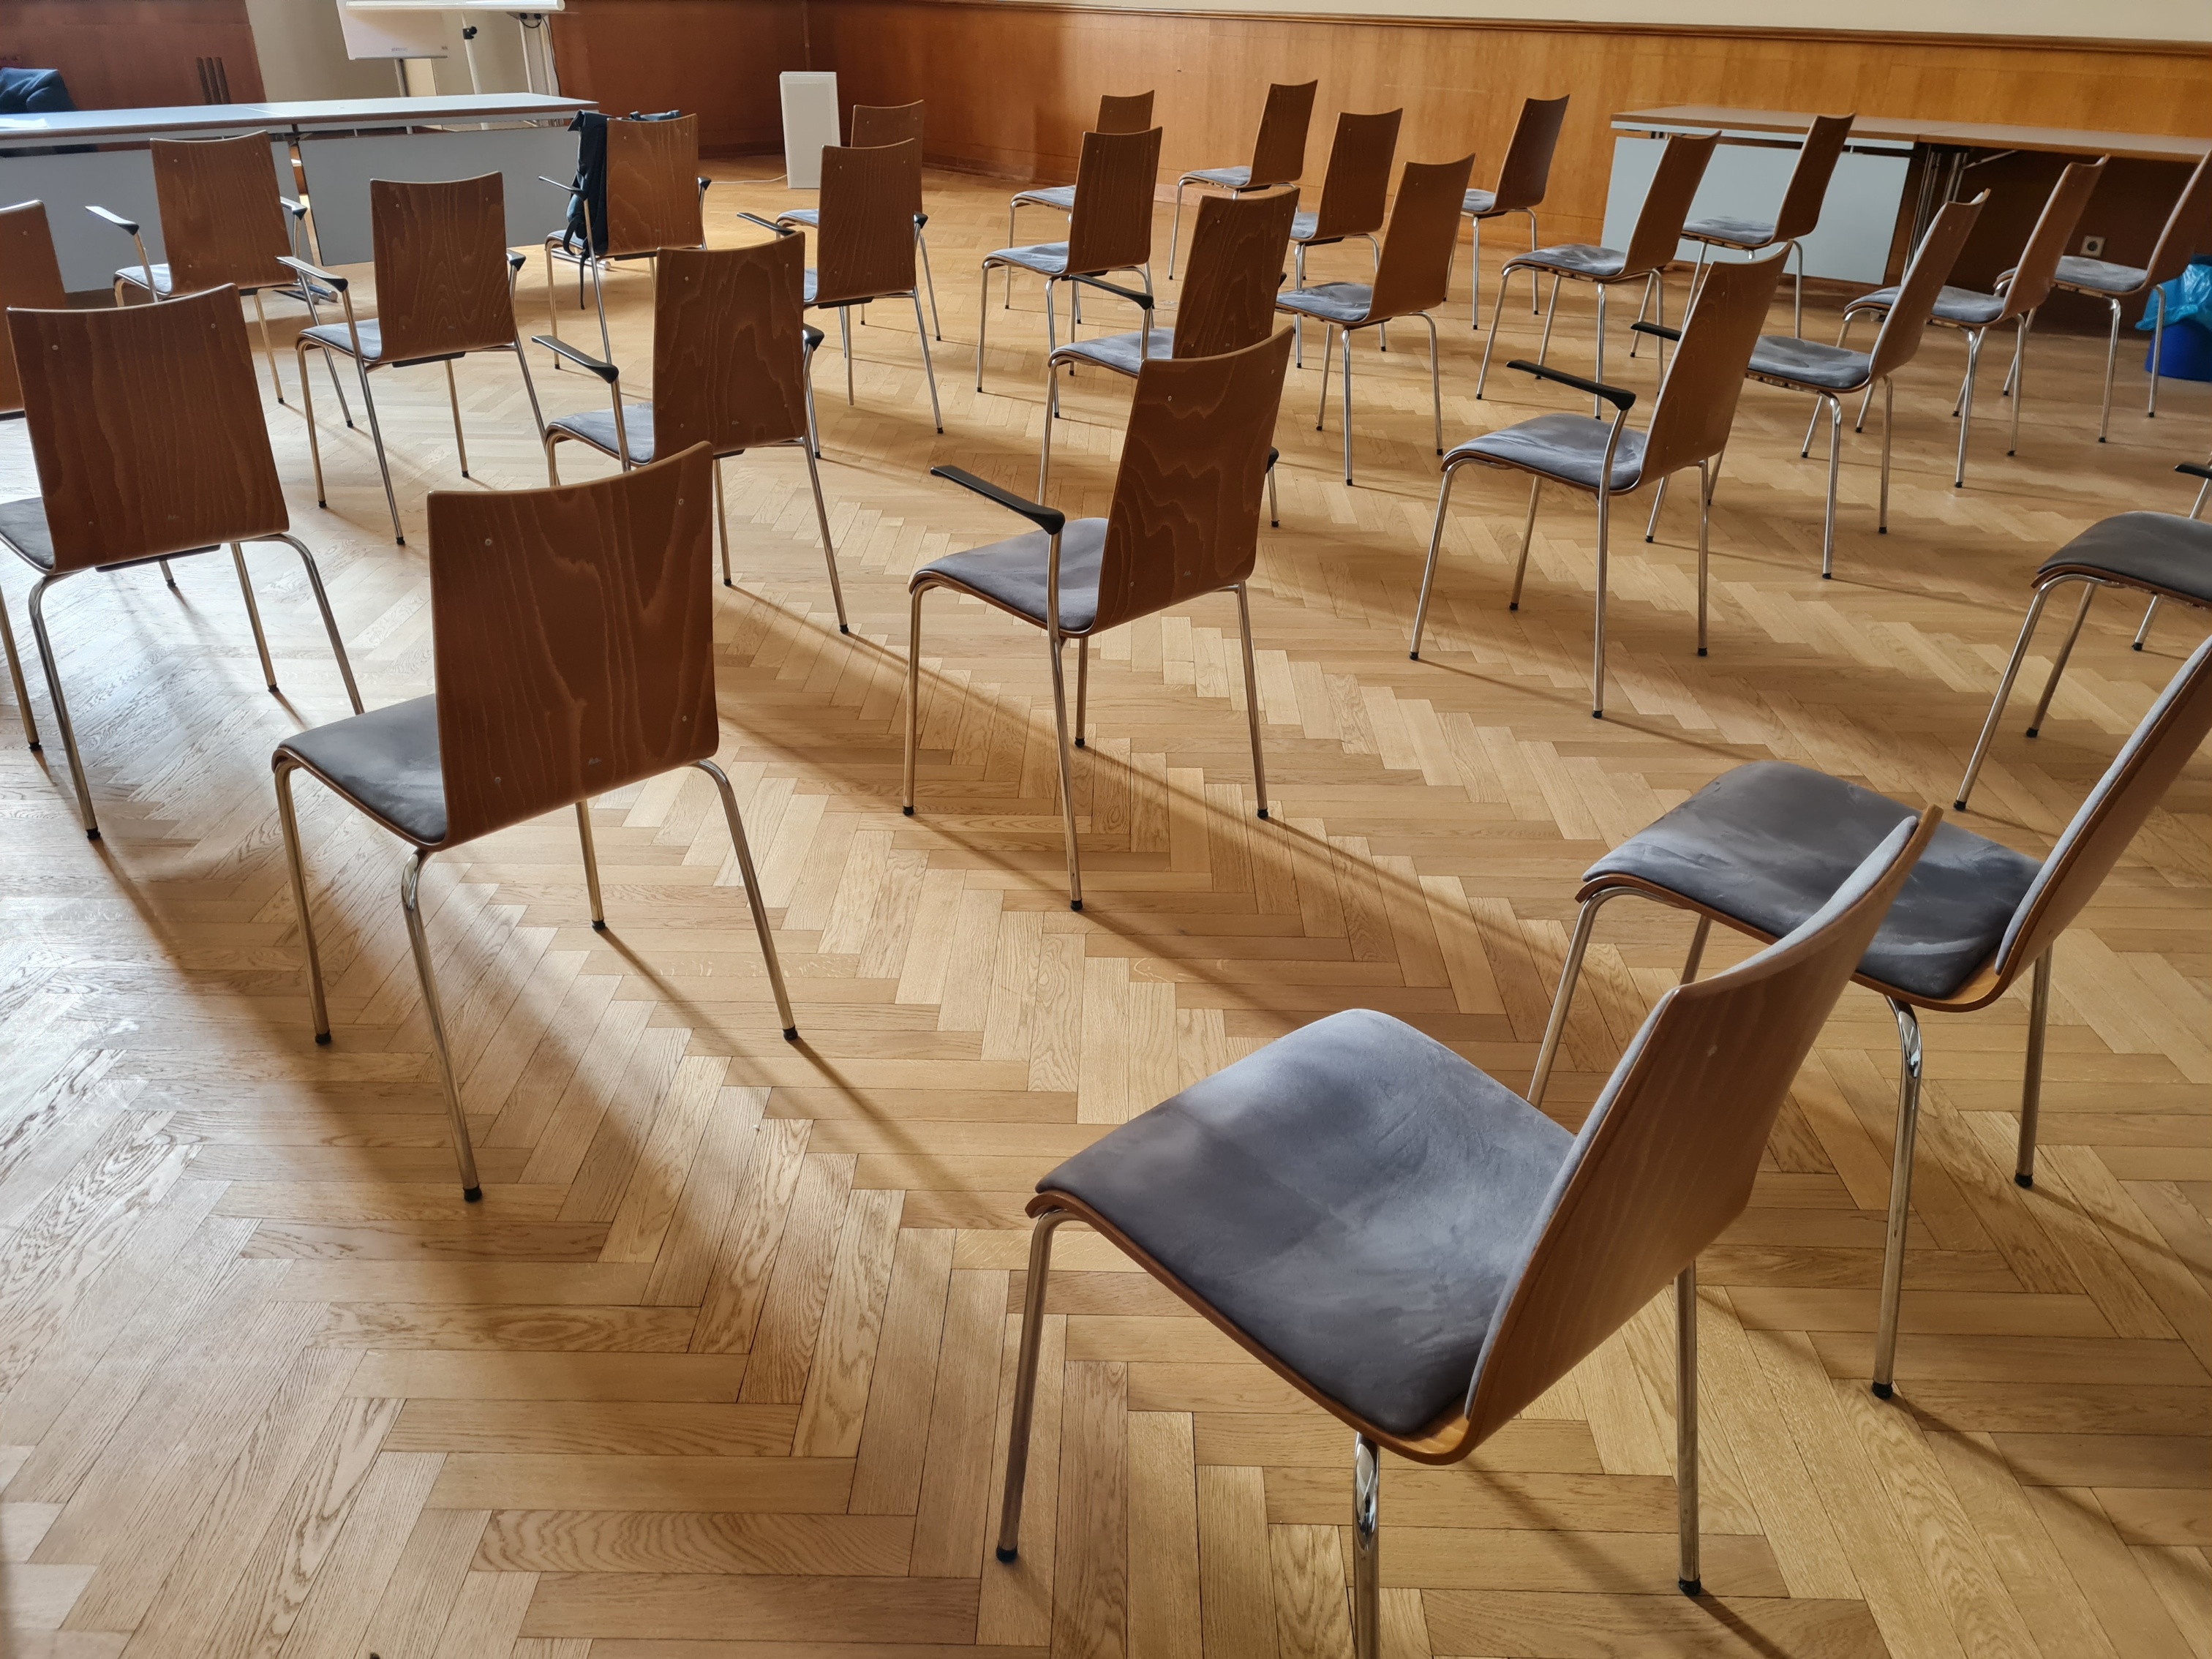 Sitzplätze der Bezirksverordneten im BVV-Saal - Rathaus Charlottenburg I Bild: René Powilleit